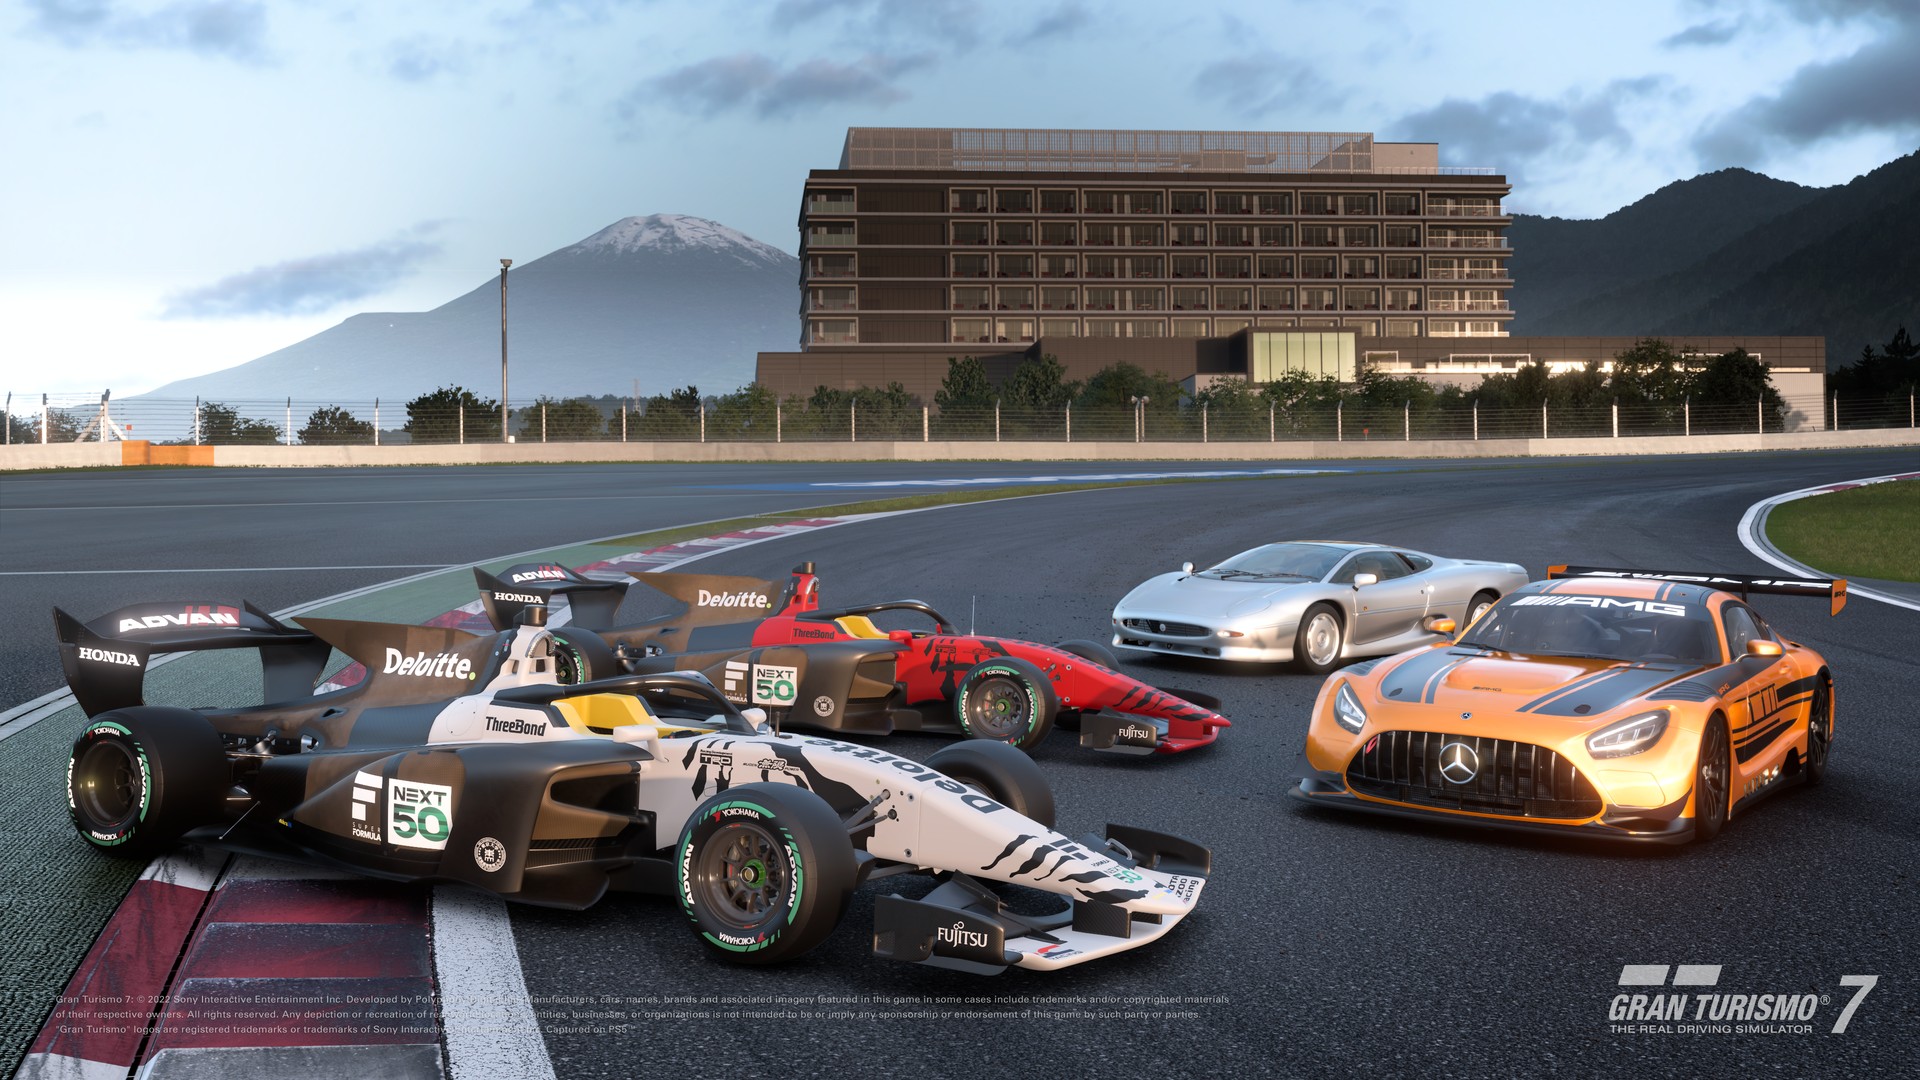 Presentamos la actualización de abril para "Gran Turismo 7", que añade 4  coches nuevos, ¡entre los que se incluyen los de Super Formula de 2023! -  gran-turismo.com